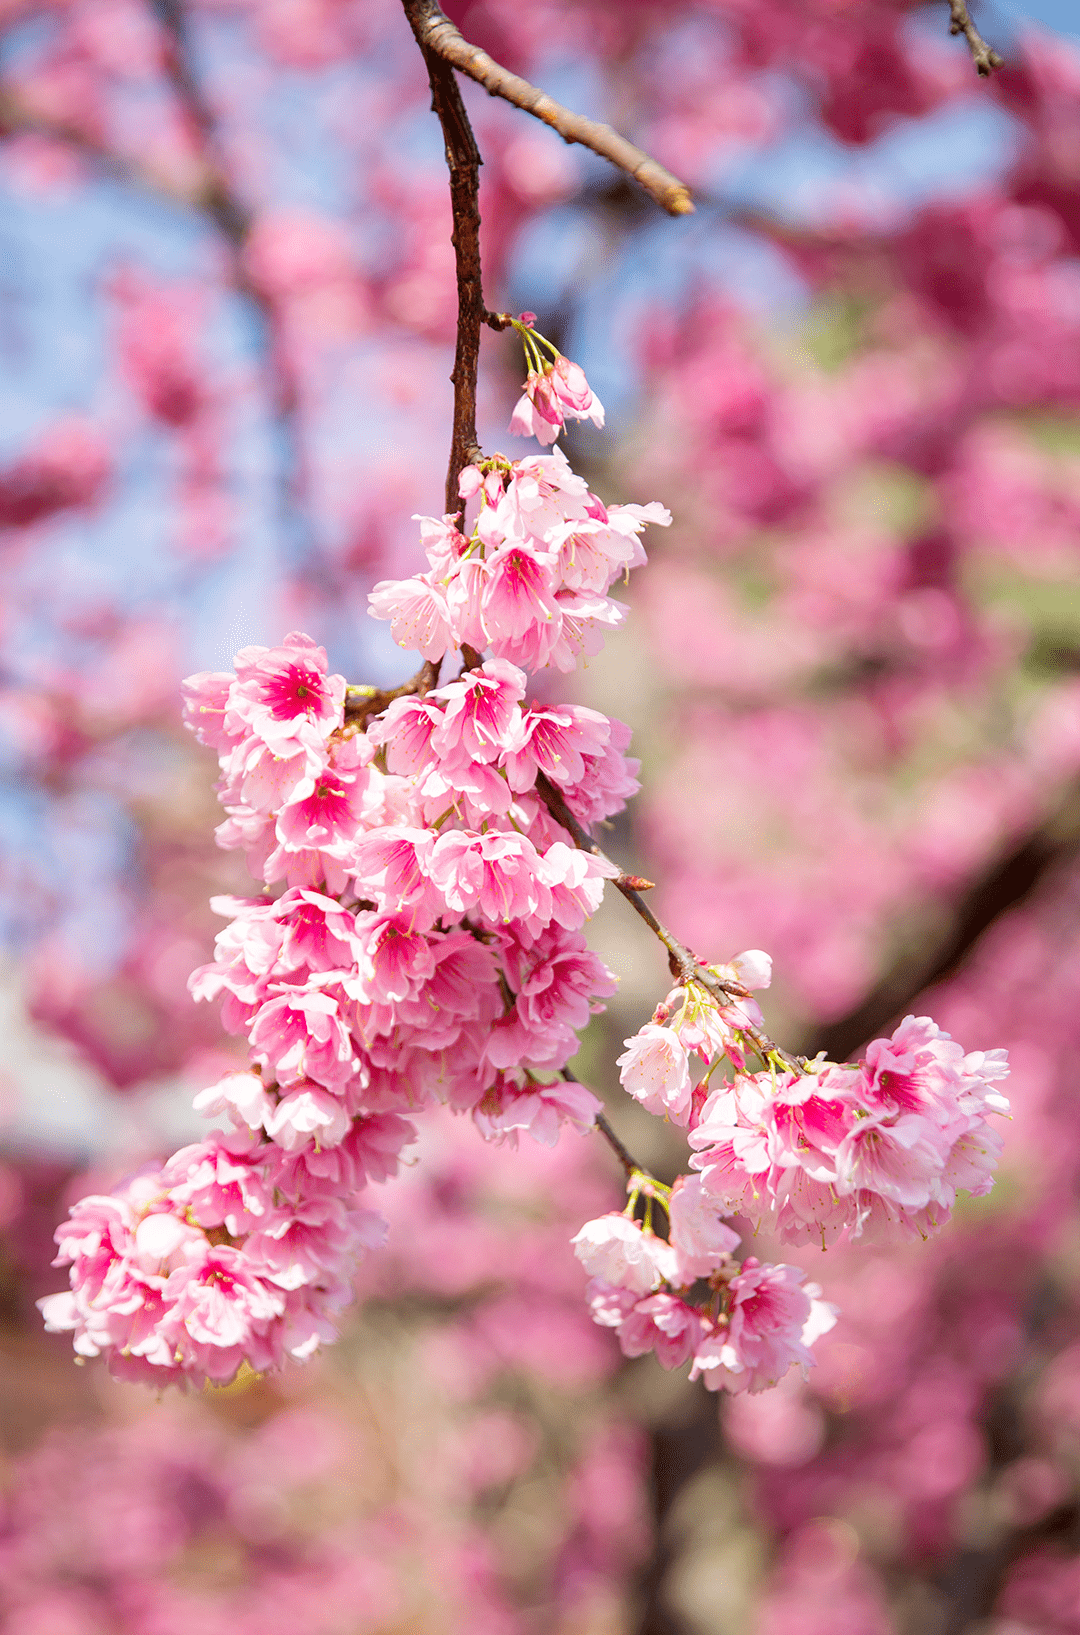 樱花盛开美图图片